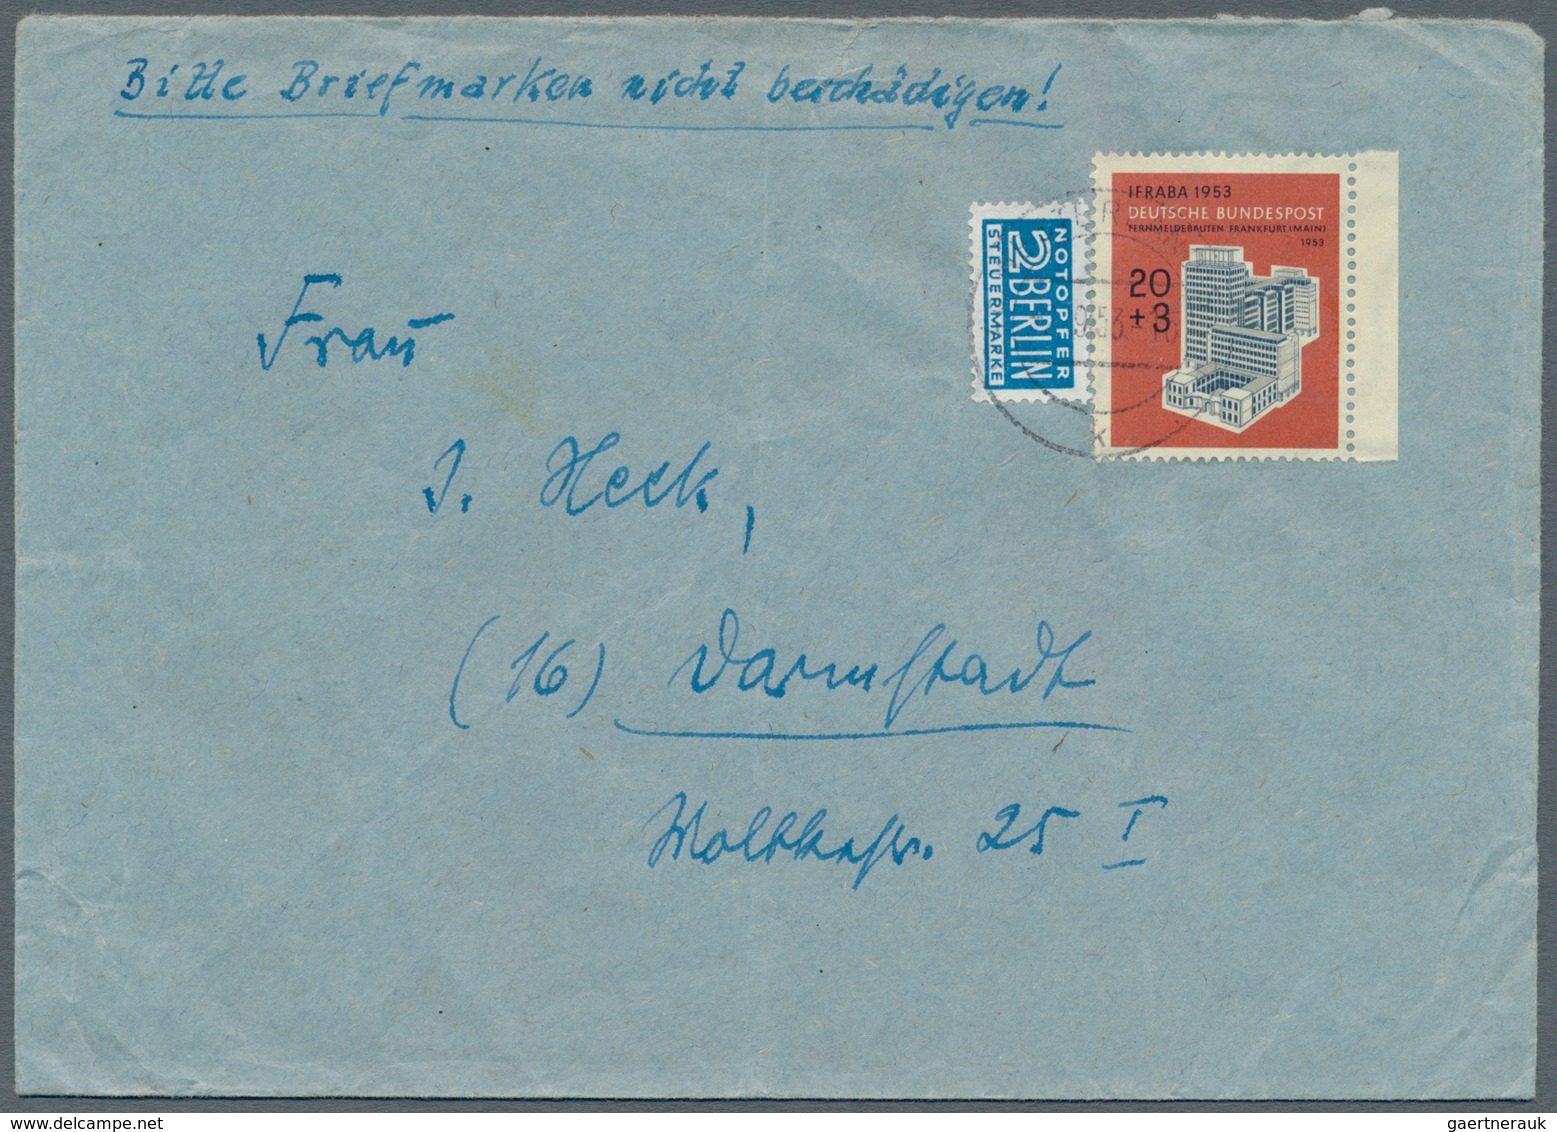 Bundesrepublik Deutschland: 1949/1960, Nette Partie Von über 50 Briefen Und Karten Mit Meist Sonderm - Sammlungen